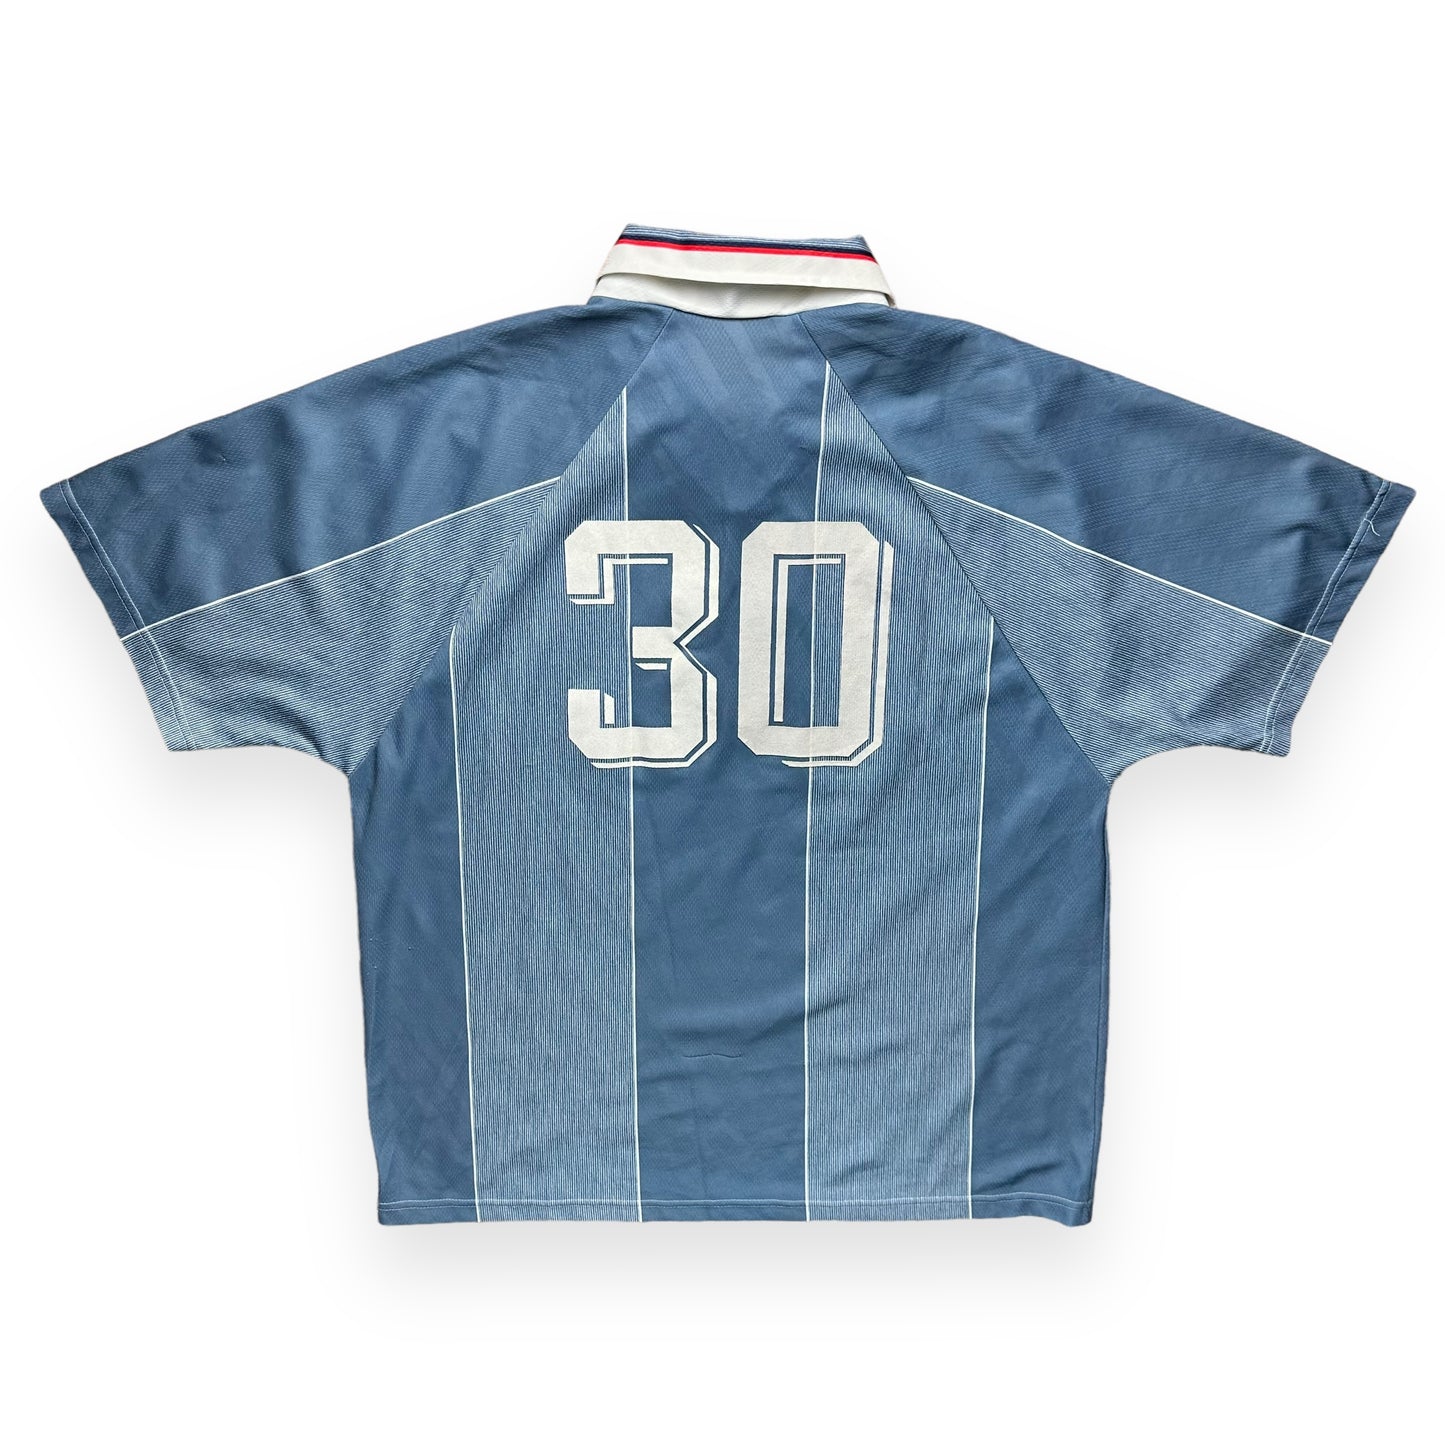 England 1996 Away Shirt (XL)